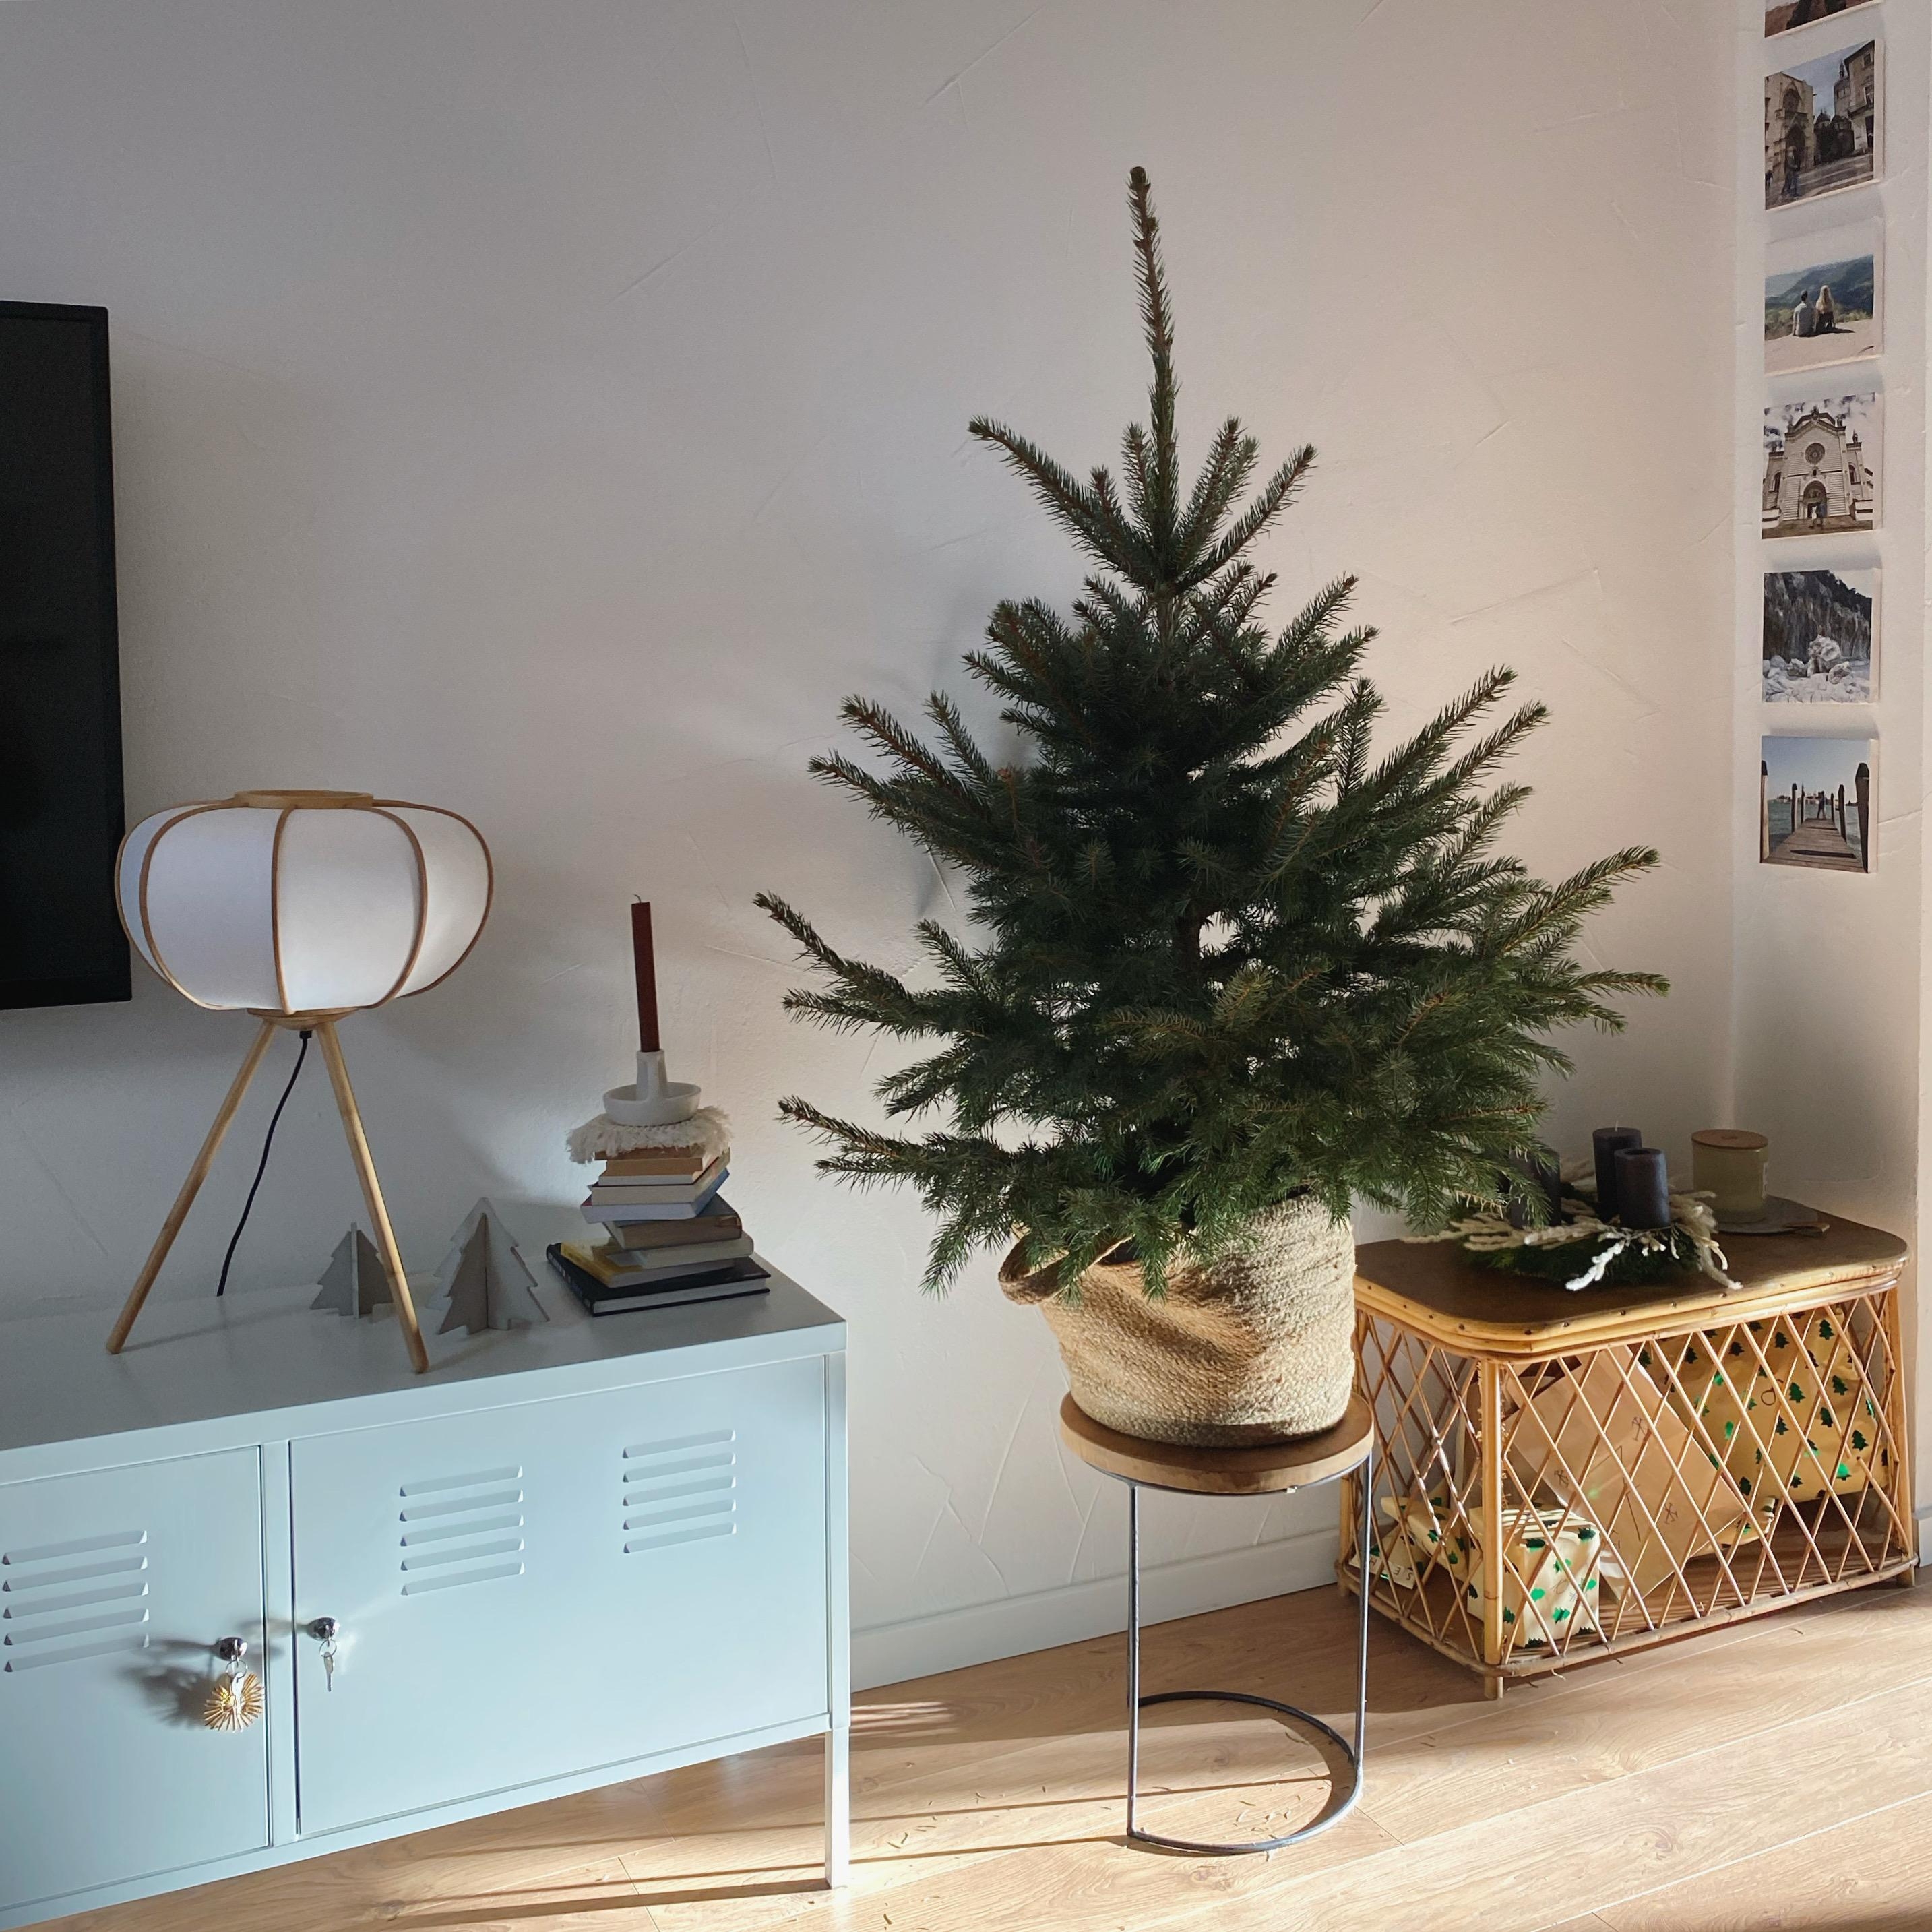 #weihnachtsbaum #weihnachtsdeko #tannenbaum #weihnachten #couchstyle #couchmagazin